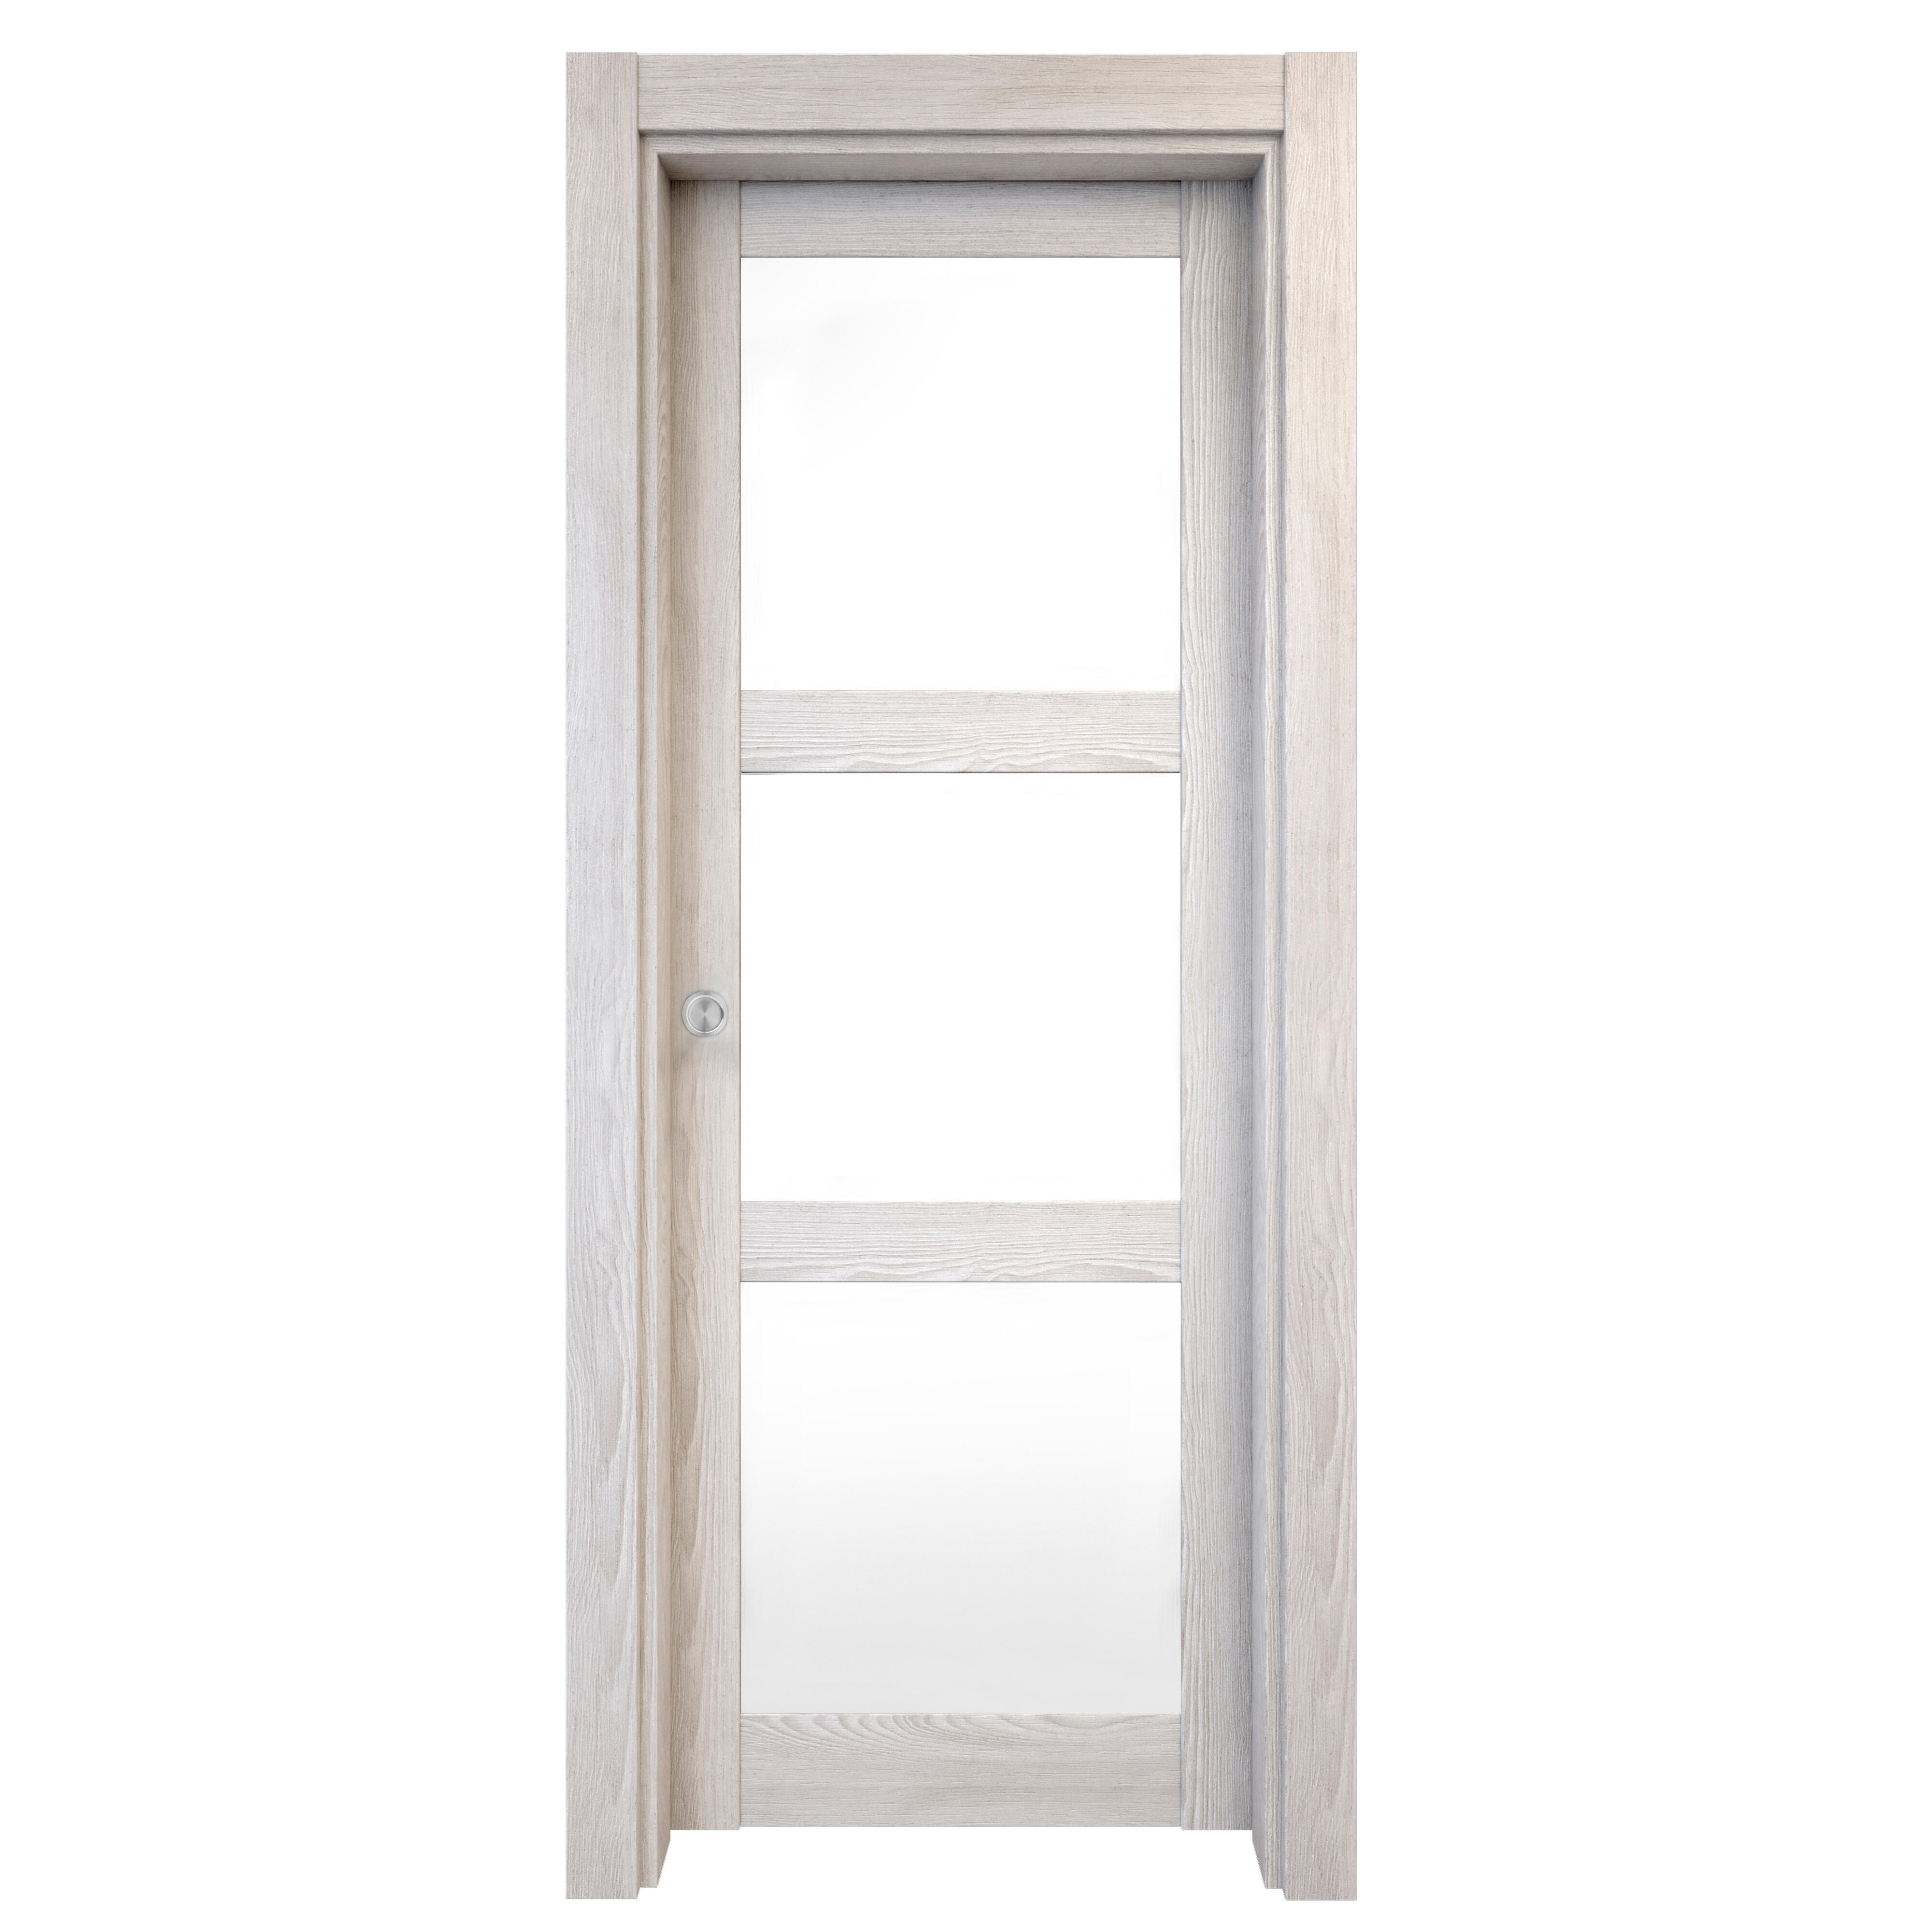 Puerta corredera moscu blanca line plus blanco con cristal de 82.5x203cm